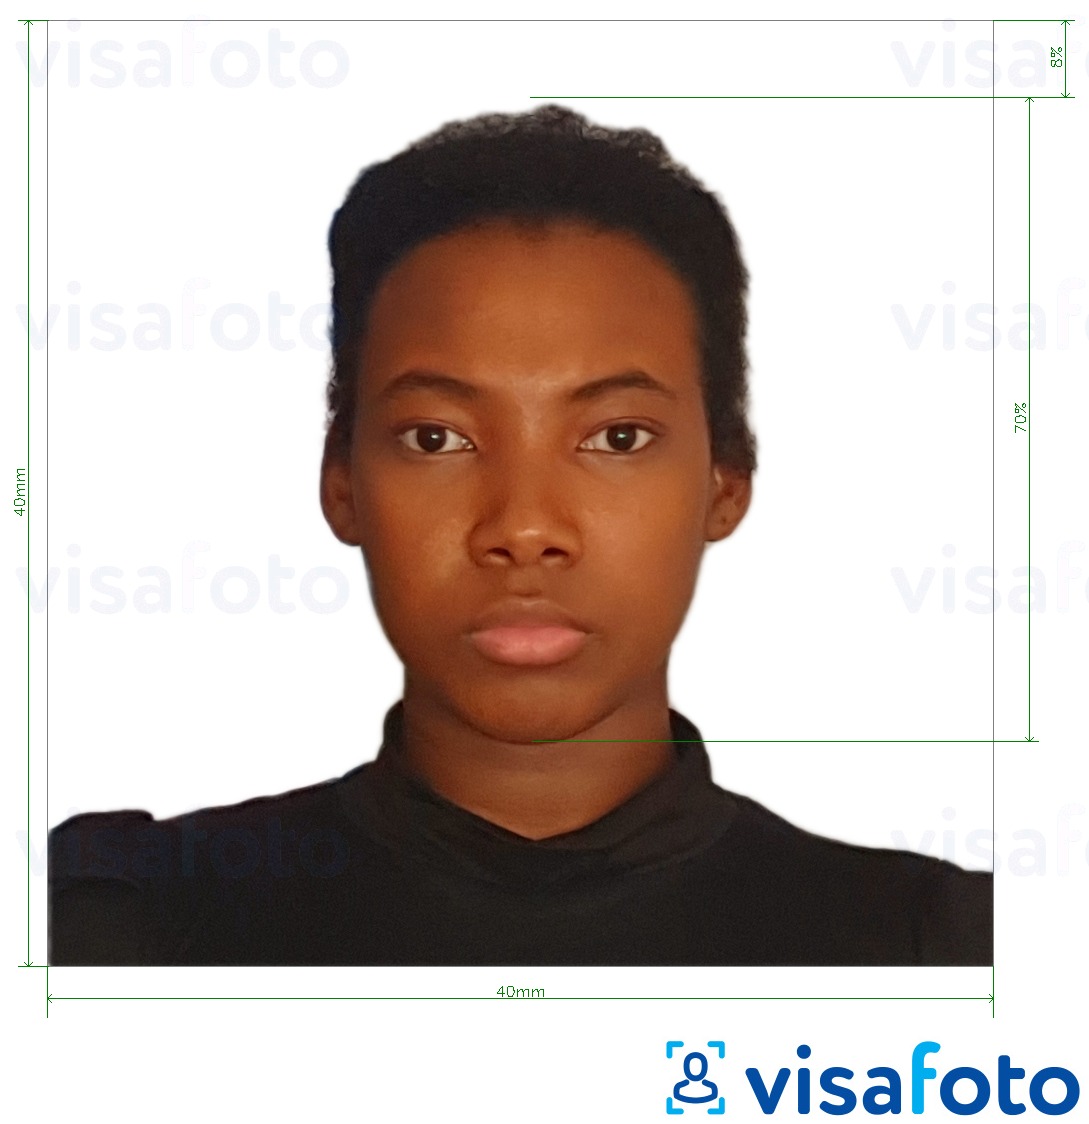 Exemplo de foto para Carteira de identidade de Madagascar 40x40 mm com especificação exata de dimensão